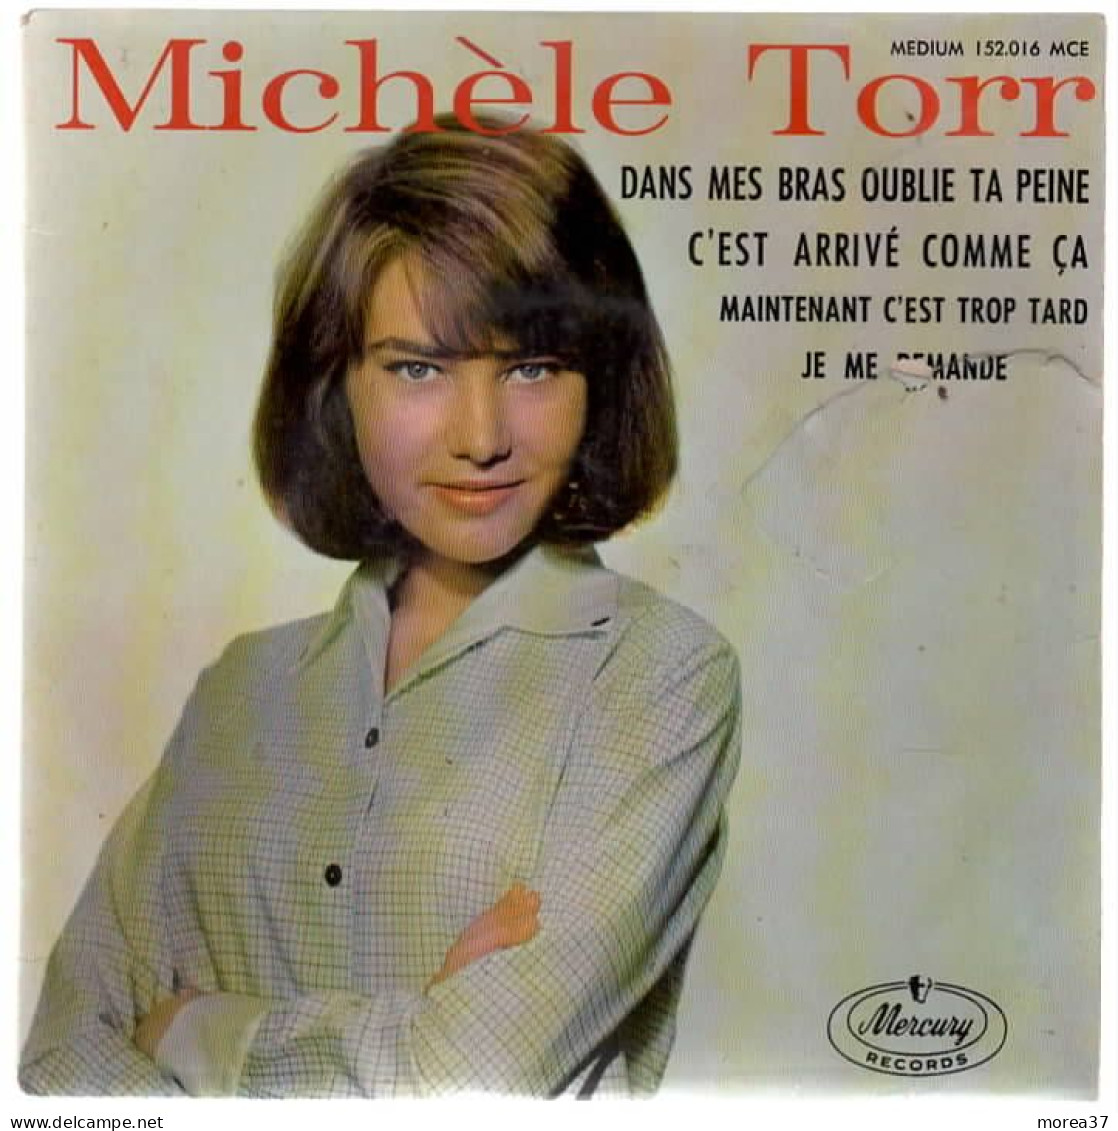 MICHELE TORR  Dans Mes Bras Oublie Ta Peine    MERCURY RECORD  152.016 MCE - Otros - Canción Francesa